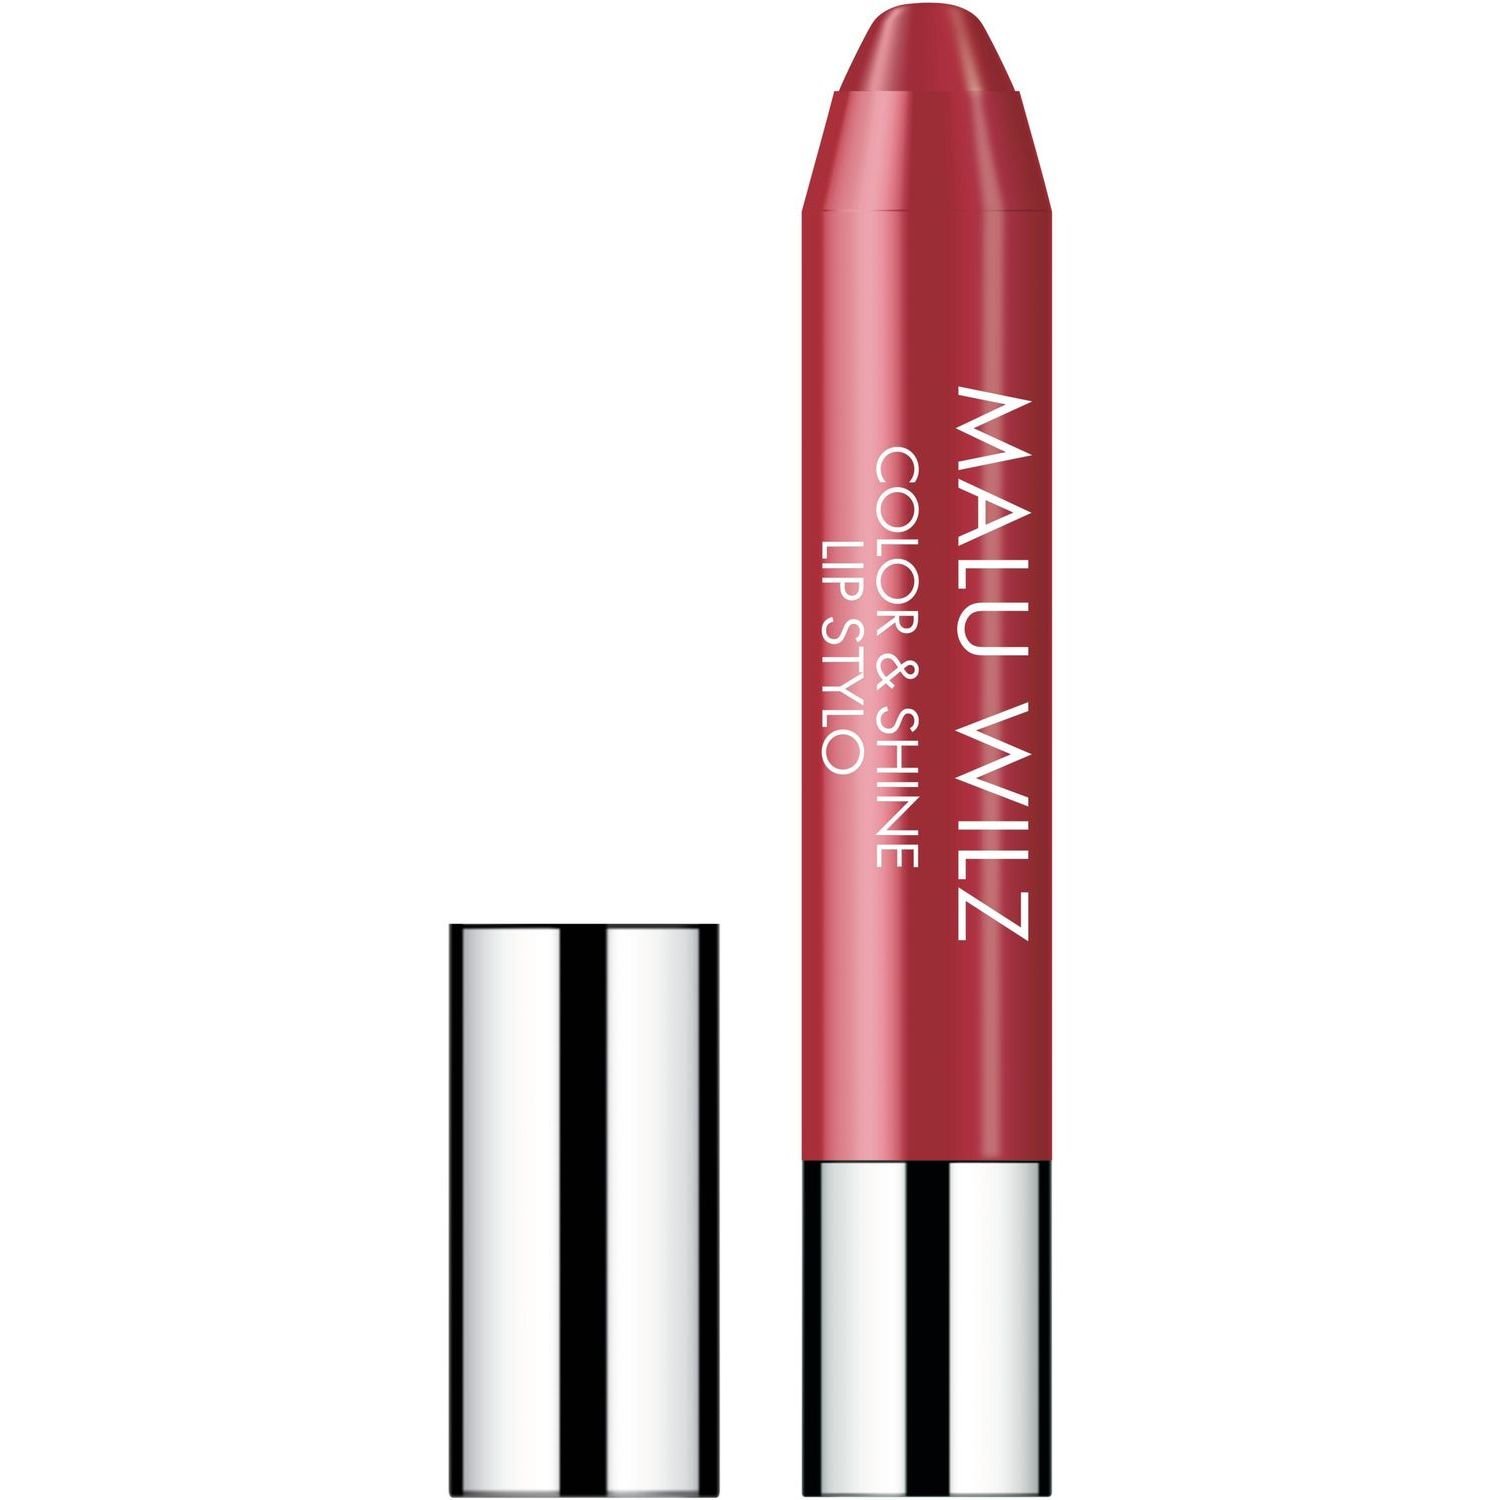 Увлажняющая губная помада Malu Wilz Color&Shine Lip Stylo, тон 20 (сладкий розовый), 11 г - фото 1